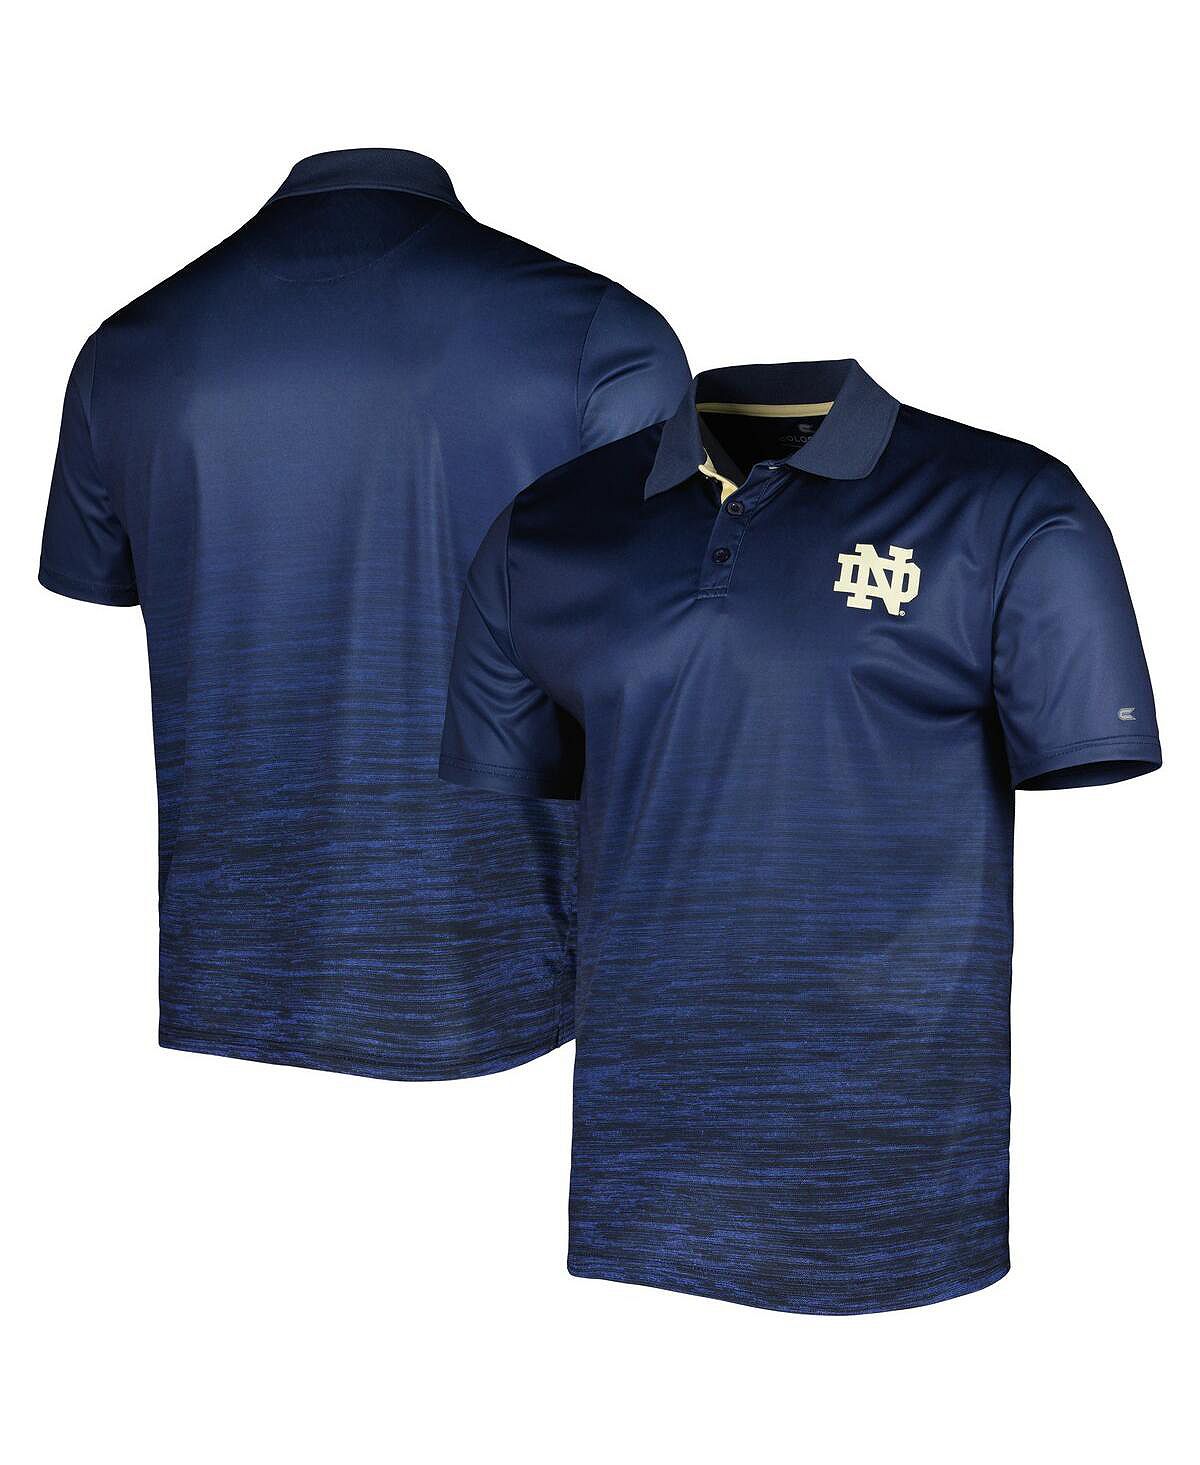 Мужская темно-синяя рубашка-поло Notre Dame Fighting Irish Marshall Colosseum